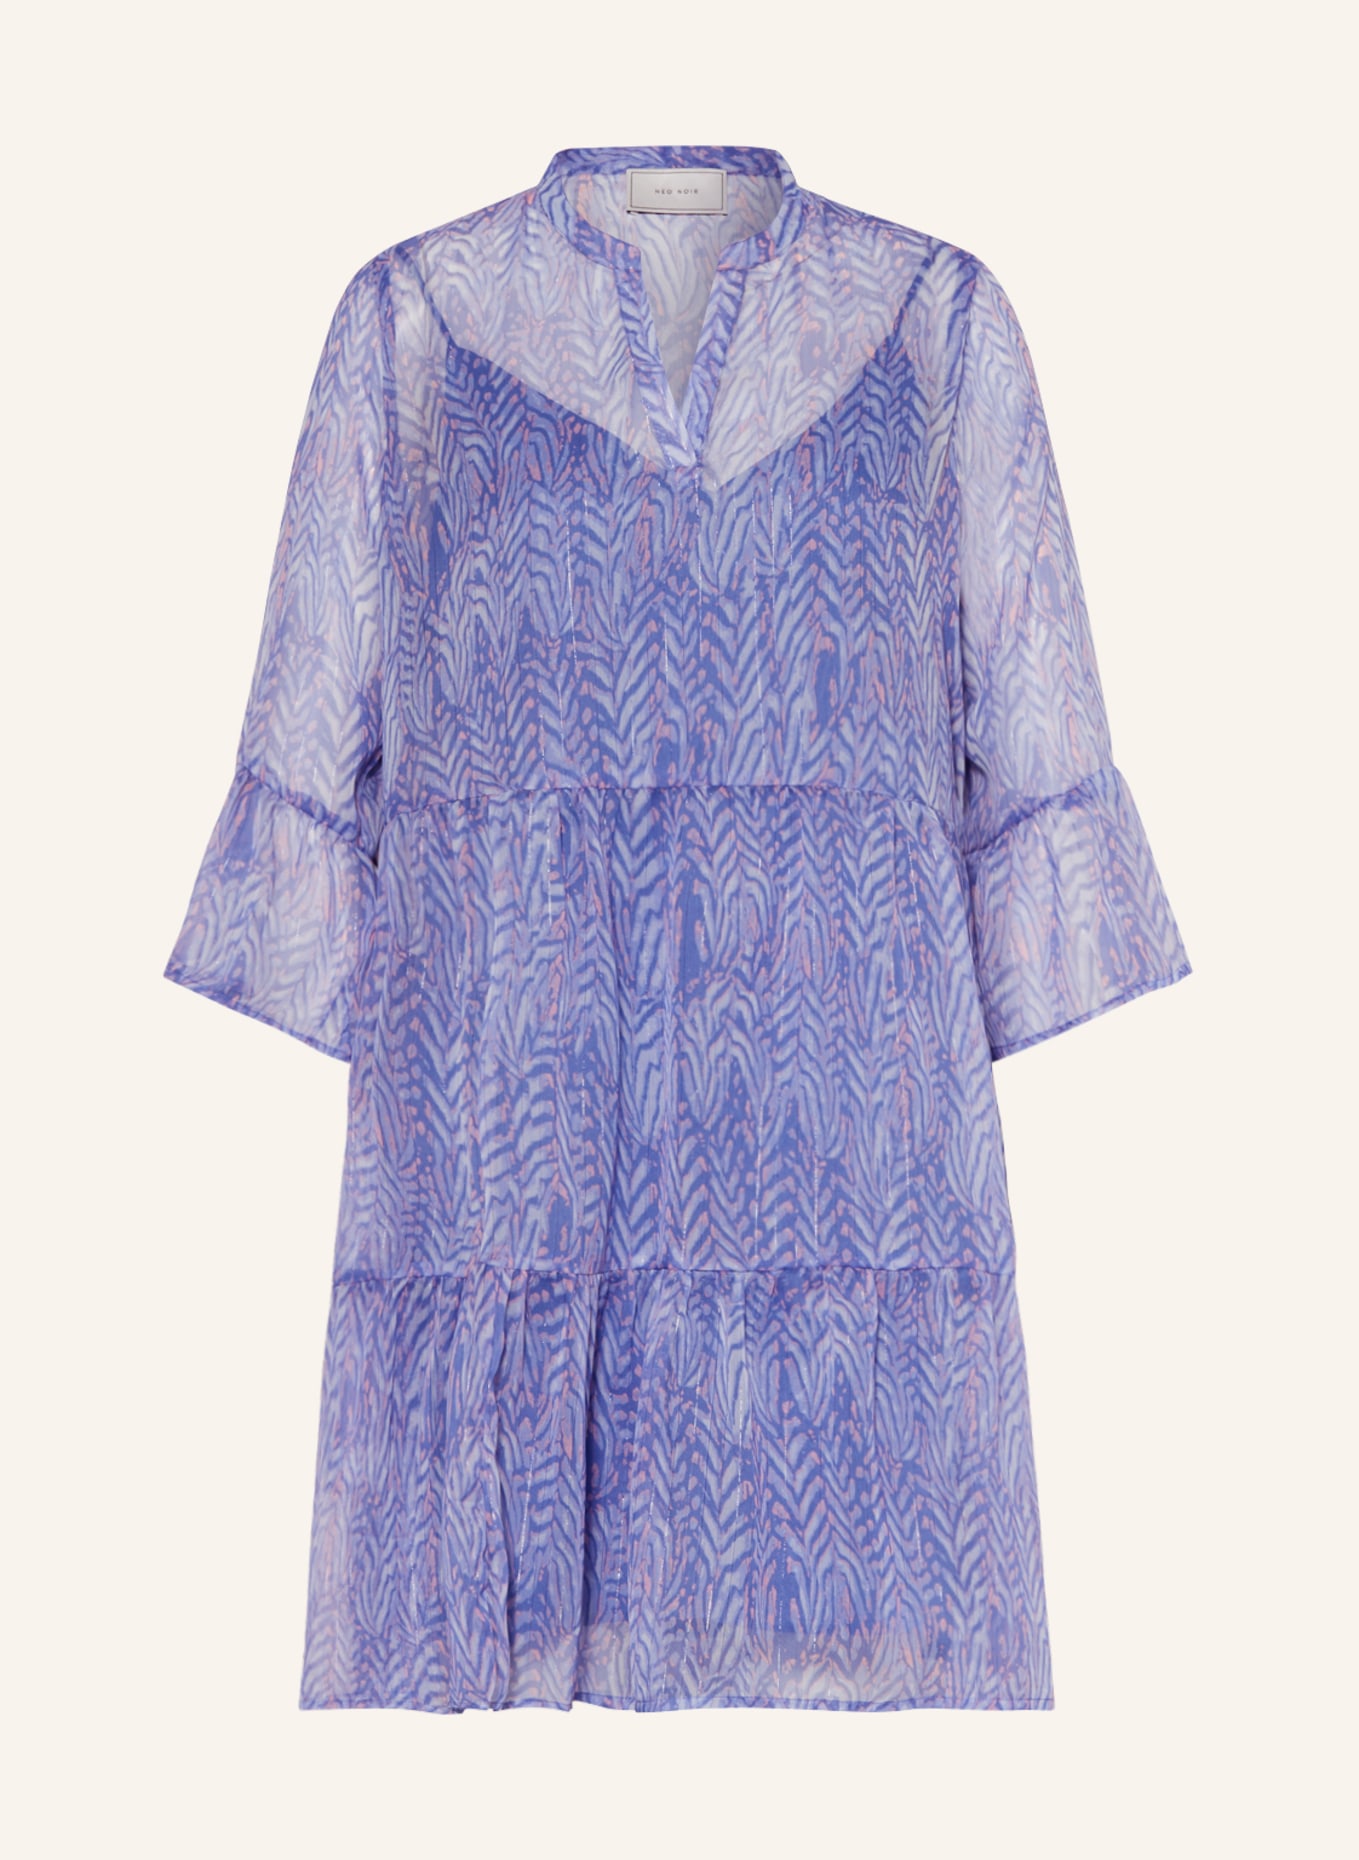 NEO NOIR Dress DENVER with 3/4 sleeves, Color: LIGHT BLUE/ LIGHT PINK/ BLUE (Image 1)